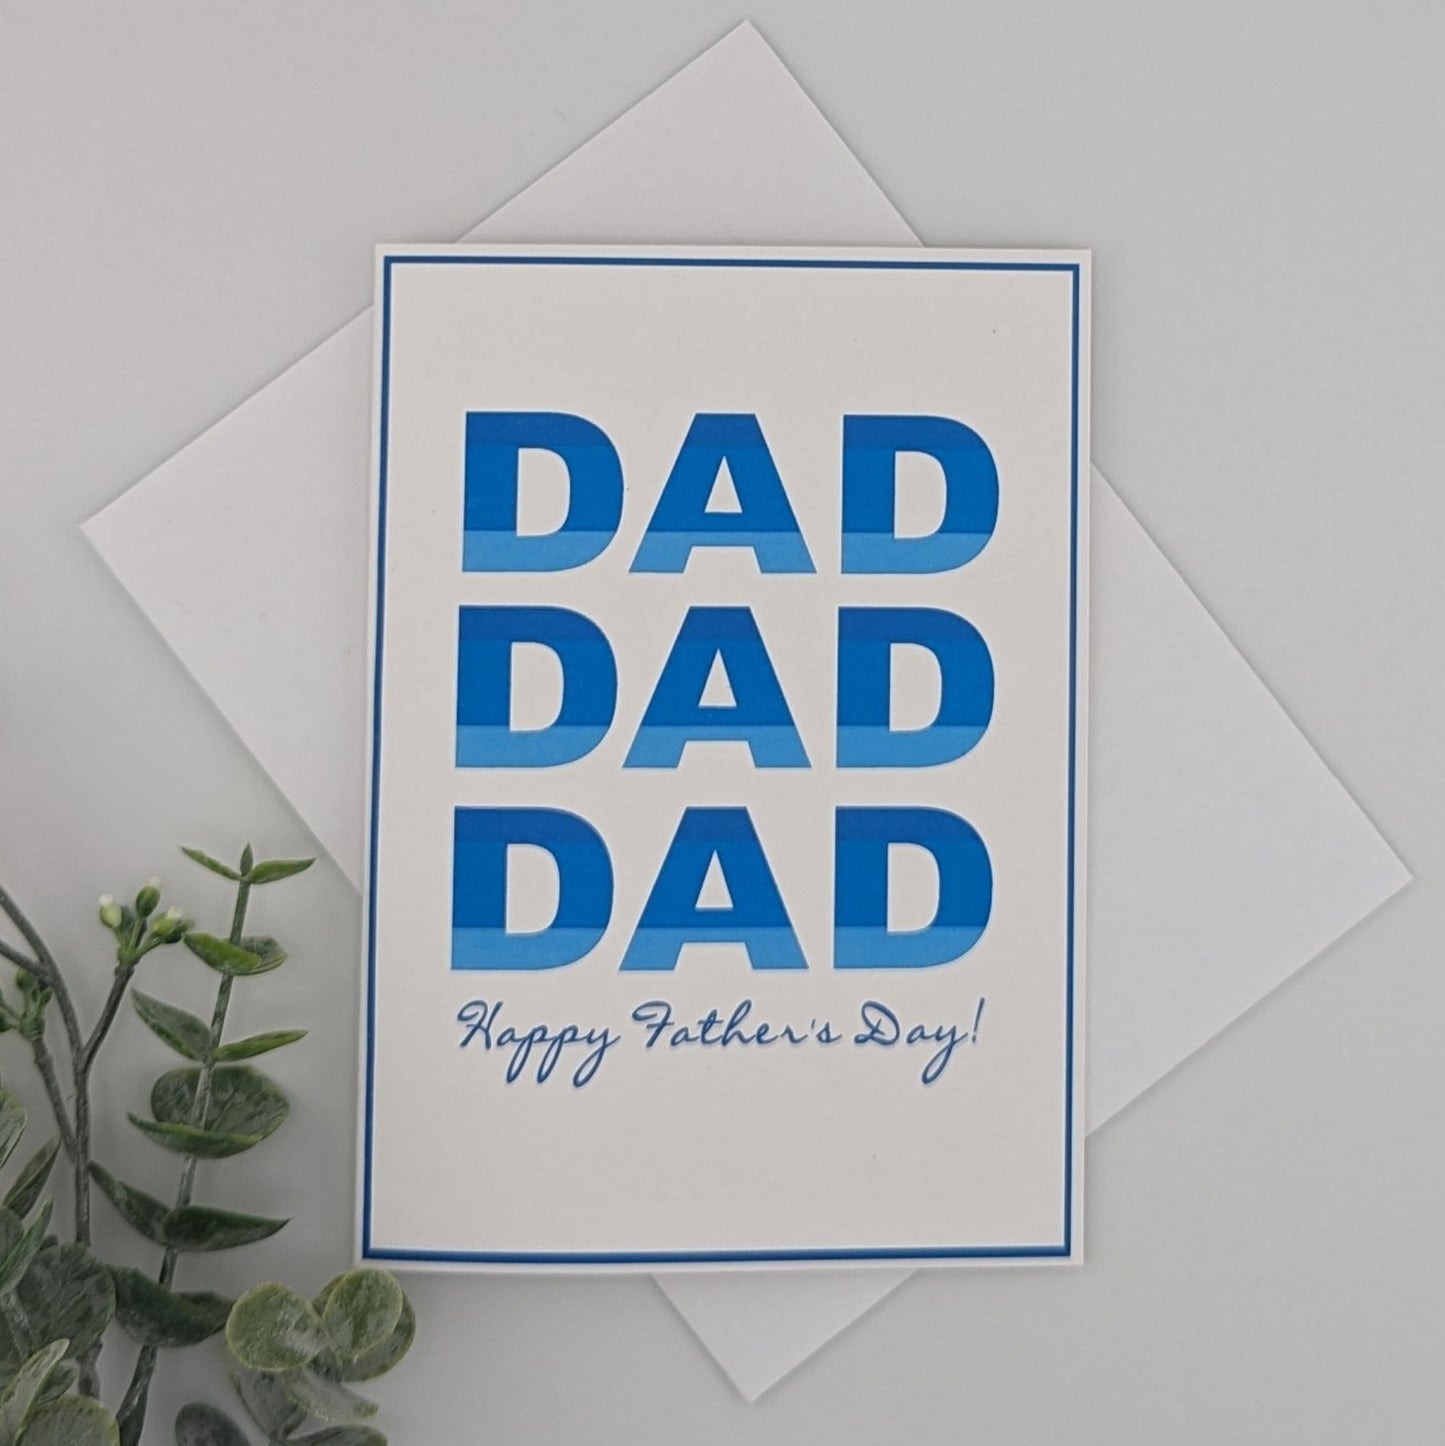 Dad Card - DAD - your color choice